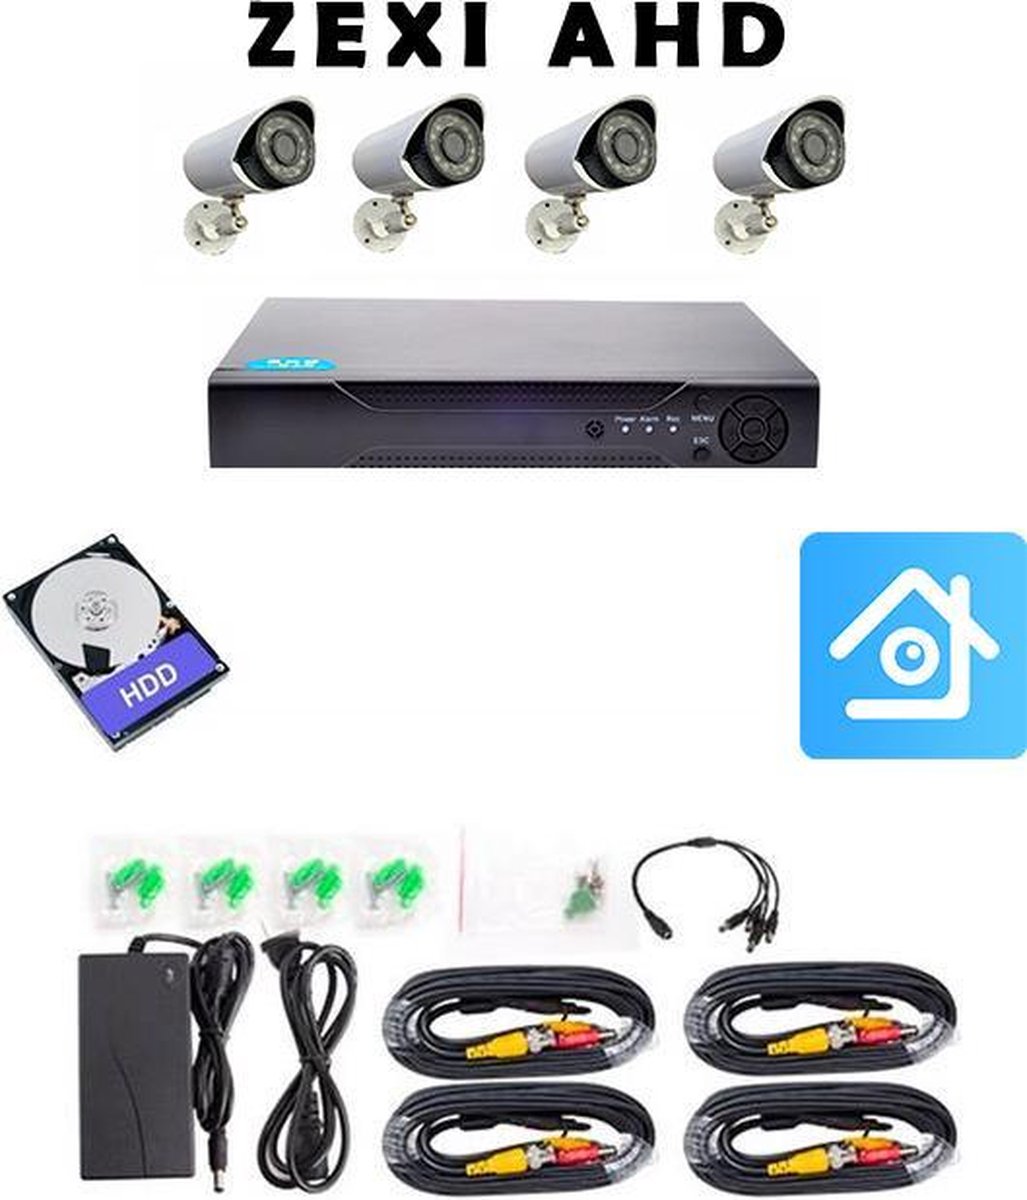 ZEXI AHD - Beveiligingscamera set met 4 Cameras- Home Security - Met Opslag - Bekabeld - Voor Buiten - 4 Camera's - Compleet Systeem – CCTV - Met 500GB